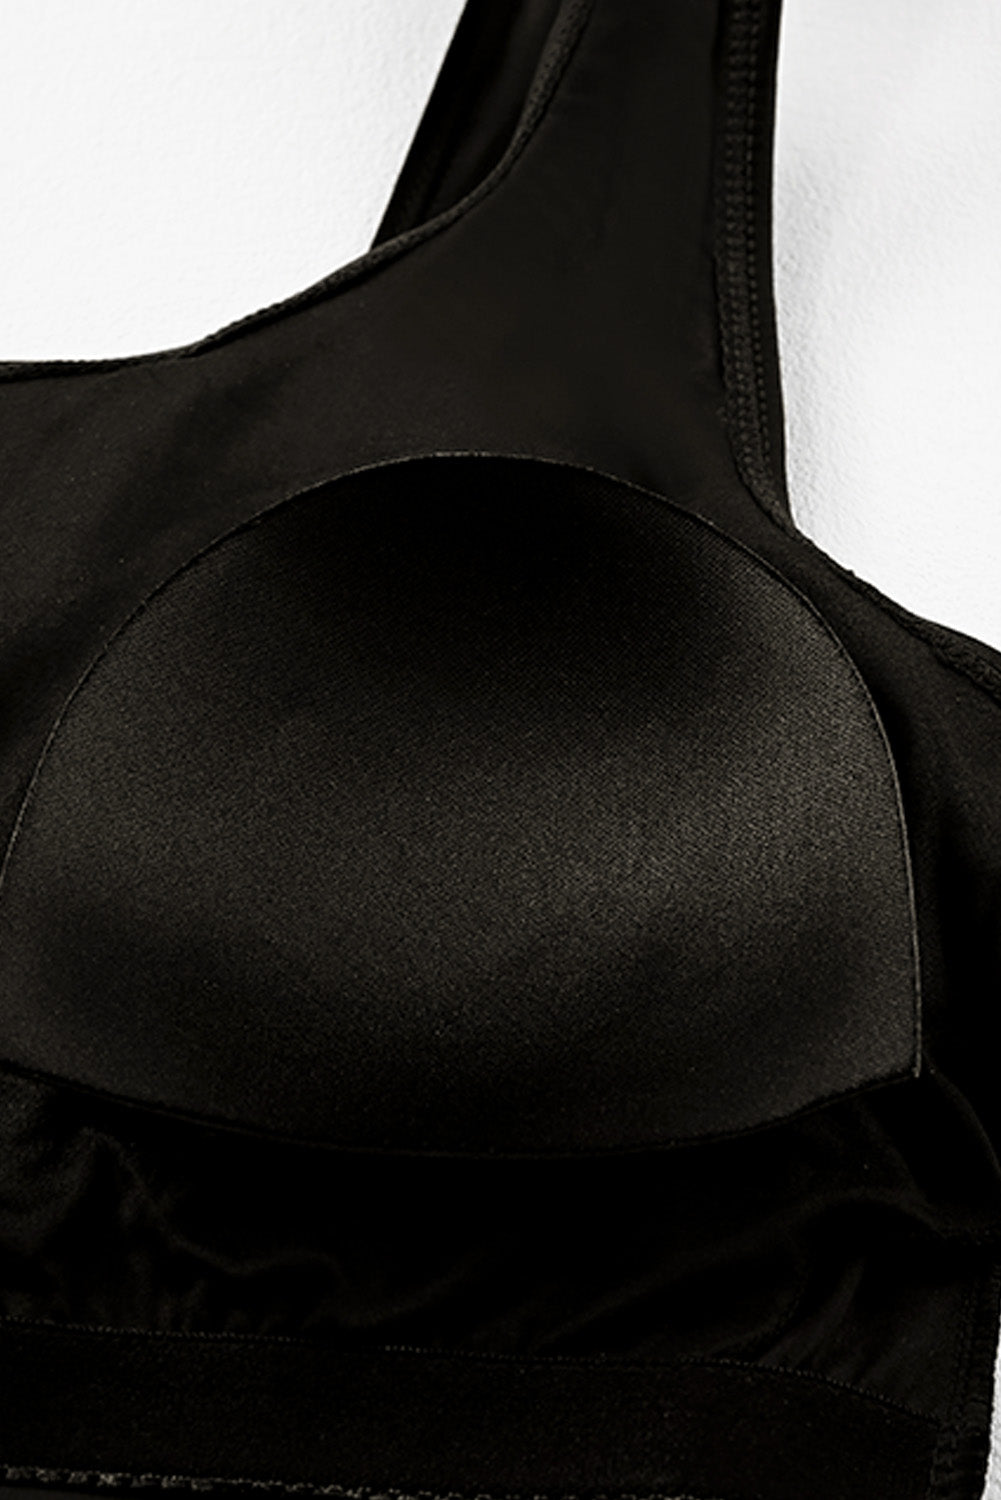 Black Square Neck Sleeveless Fashion Print Tankini Set